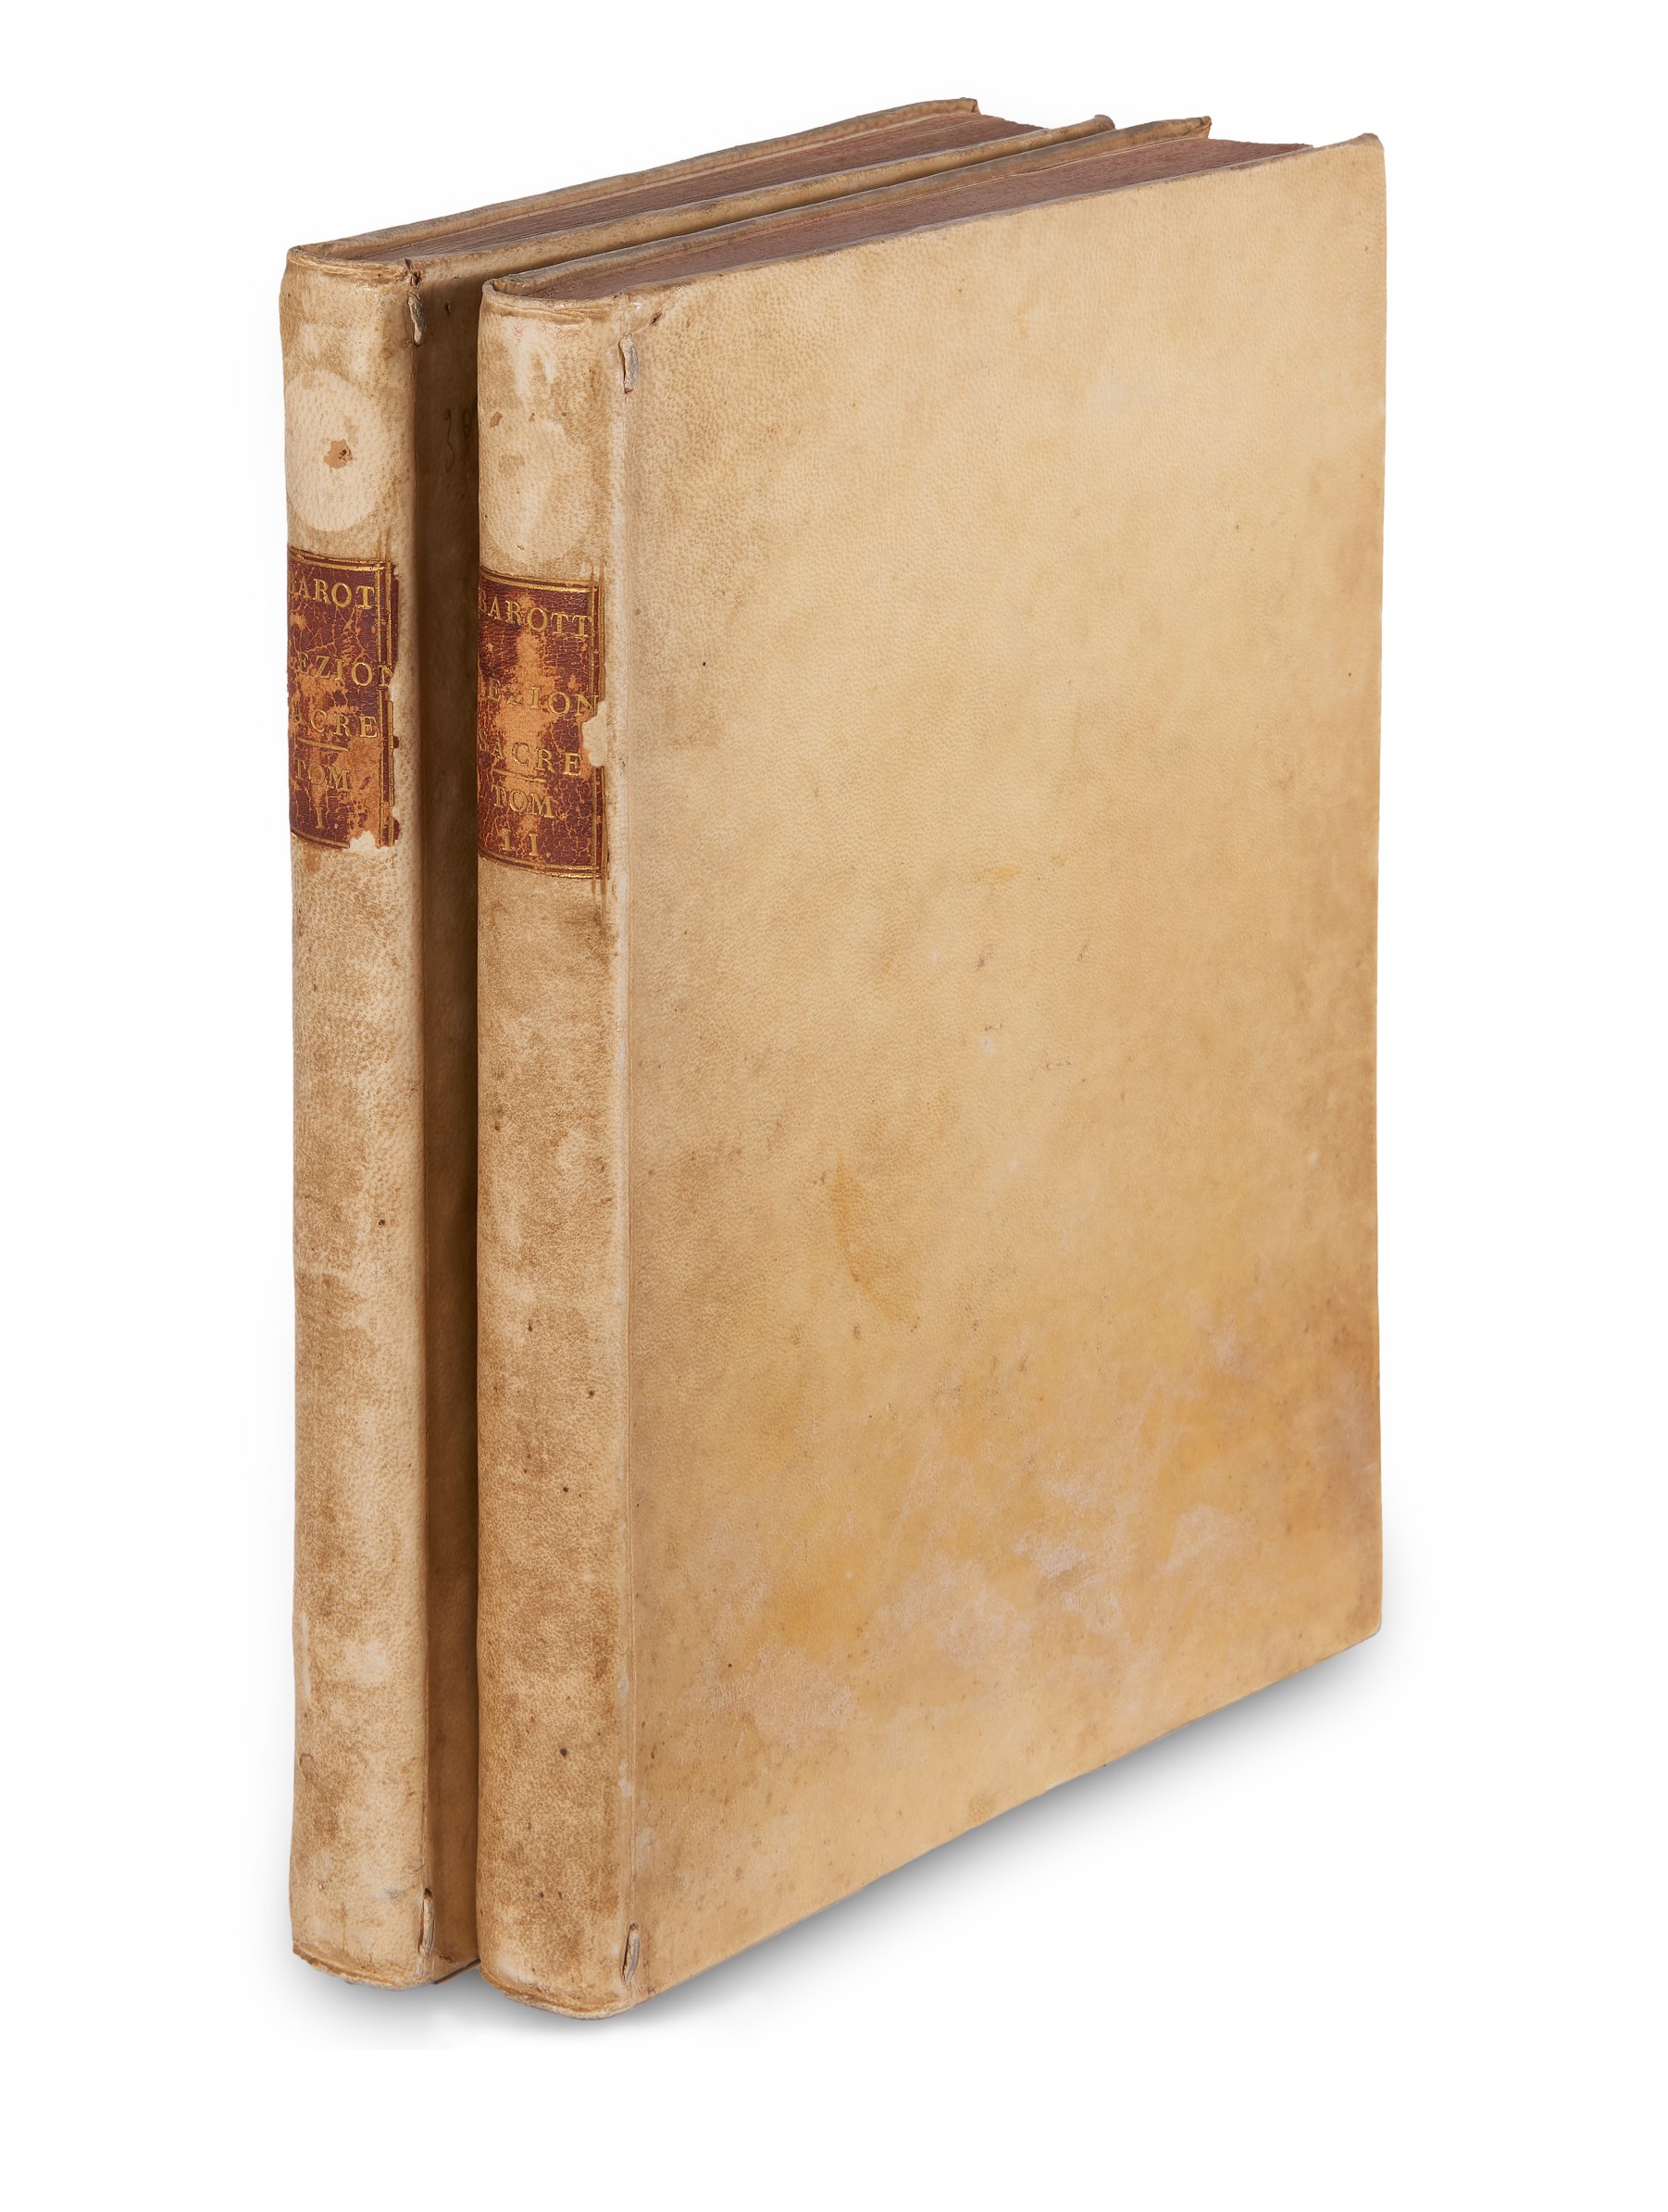 BAROTTI, Lorenzo (1724-1801). Lezioni sacre dell'Abate Lorenzo Barotti su i libri di Tobia, di